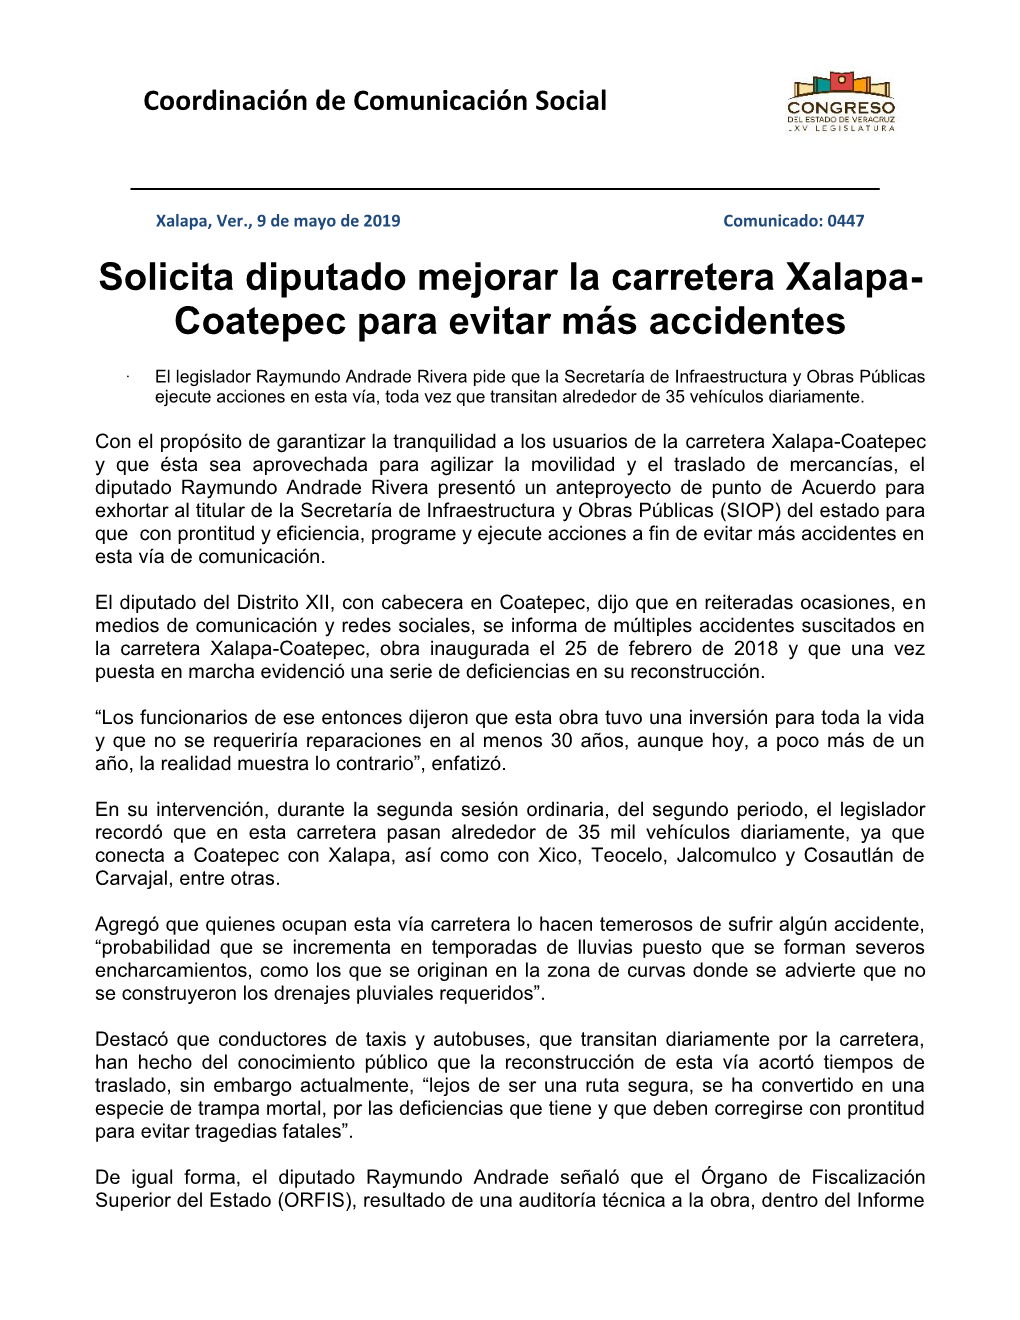 Solicita Diputado Mejorar La Carretera Xalapa- Coatepec Para Evitar Más Accidentes